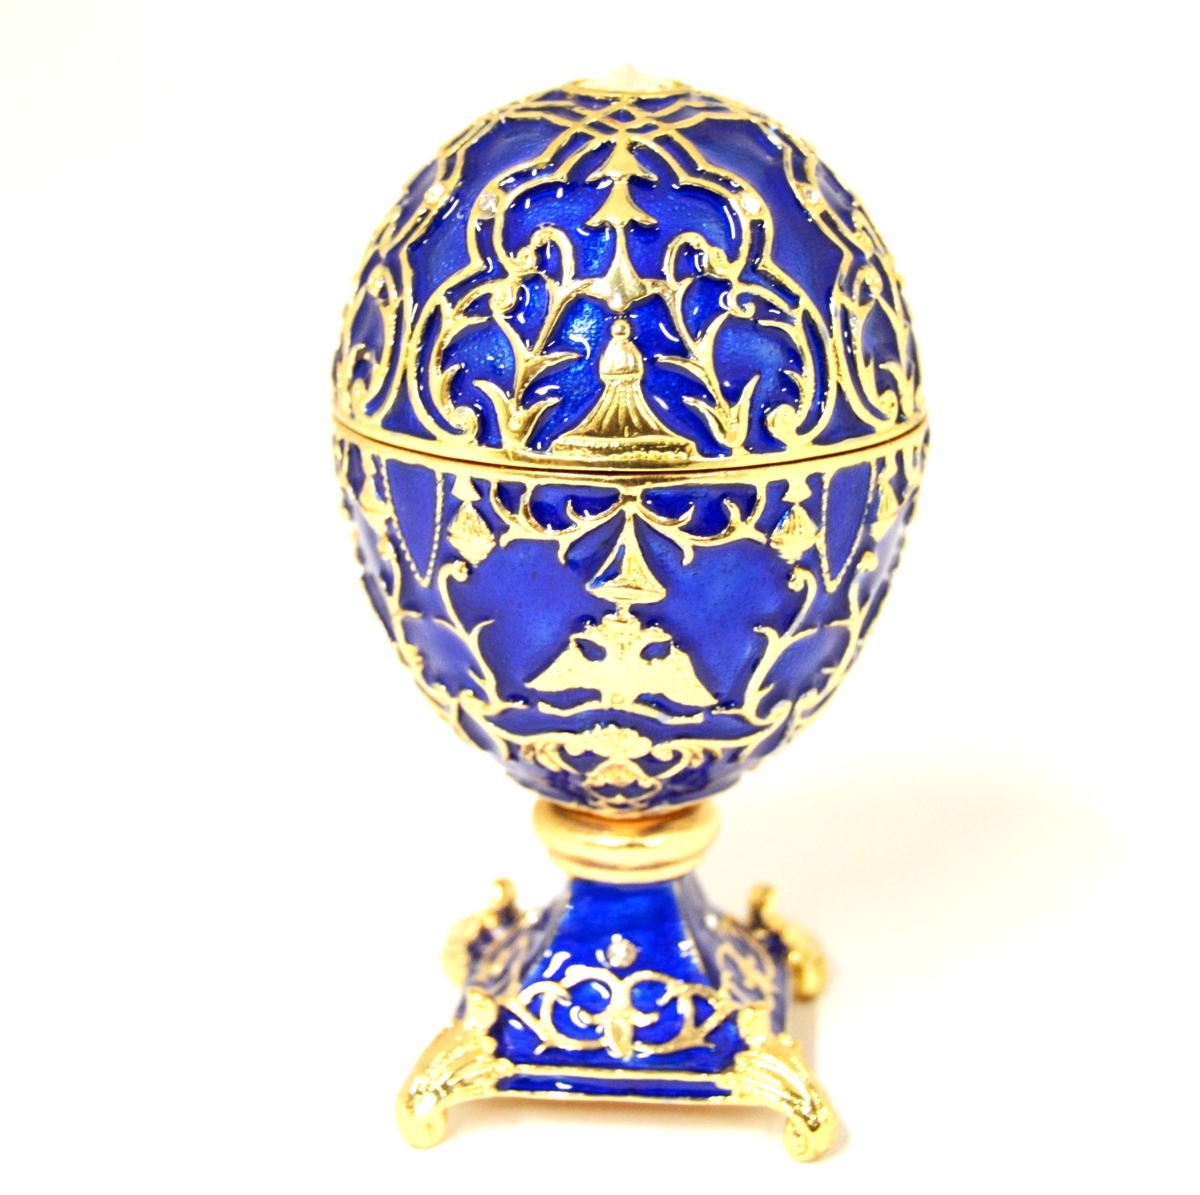 1131505A Faberge Design Egg Gold Plating Trinket Box - Swarovski Crystals & Enamel -  Ciel Collectables